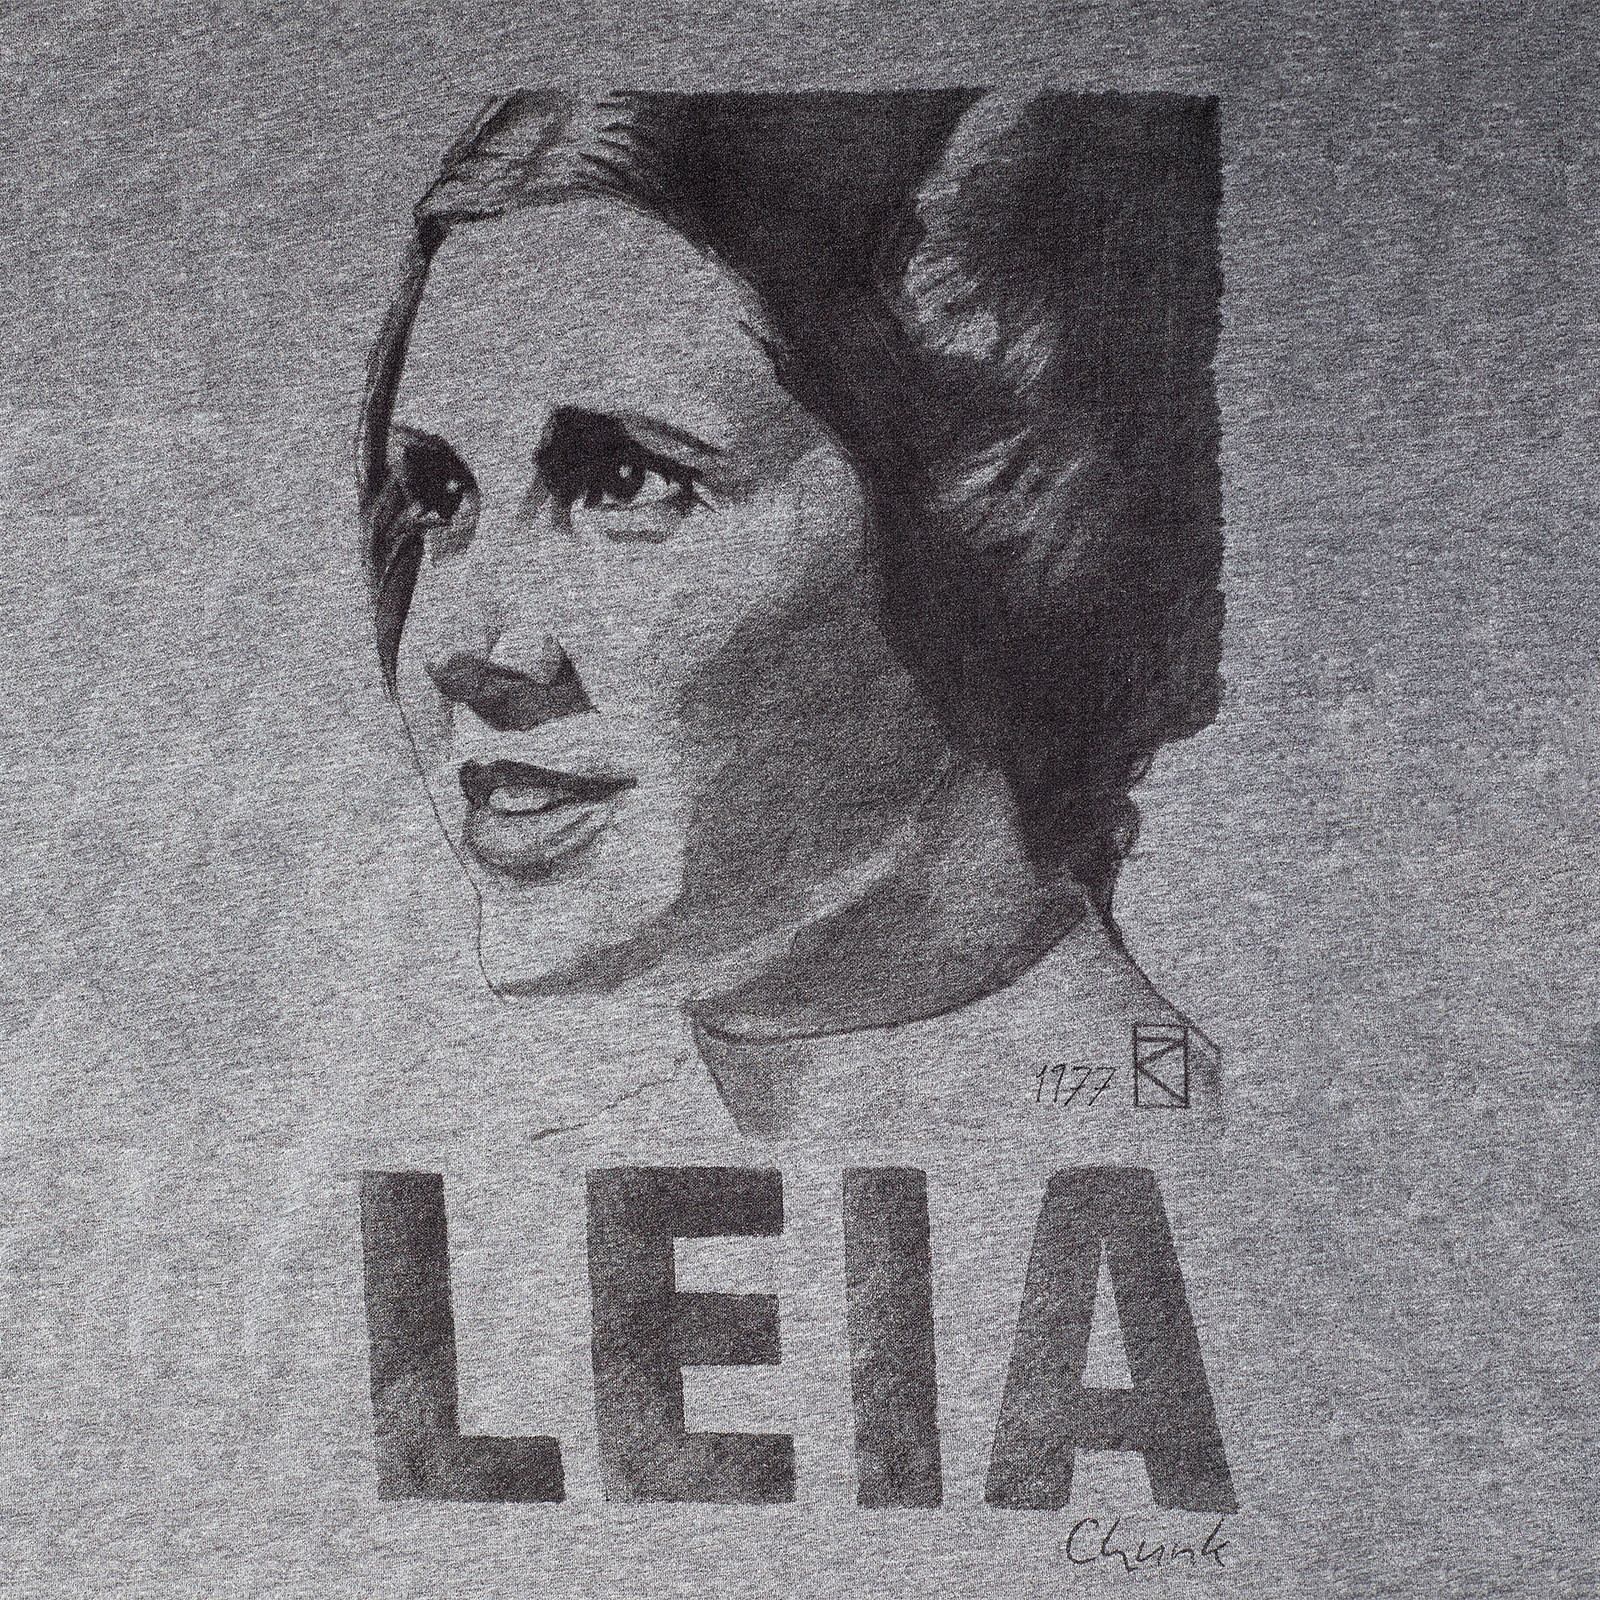 Star Wars - Leia Sketch T-Shirt grau